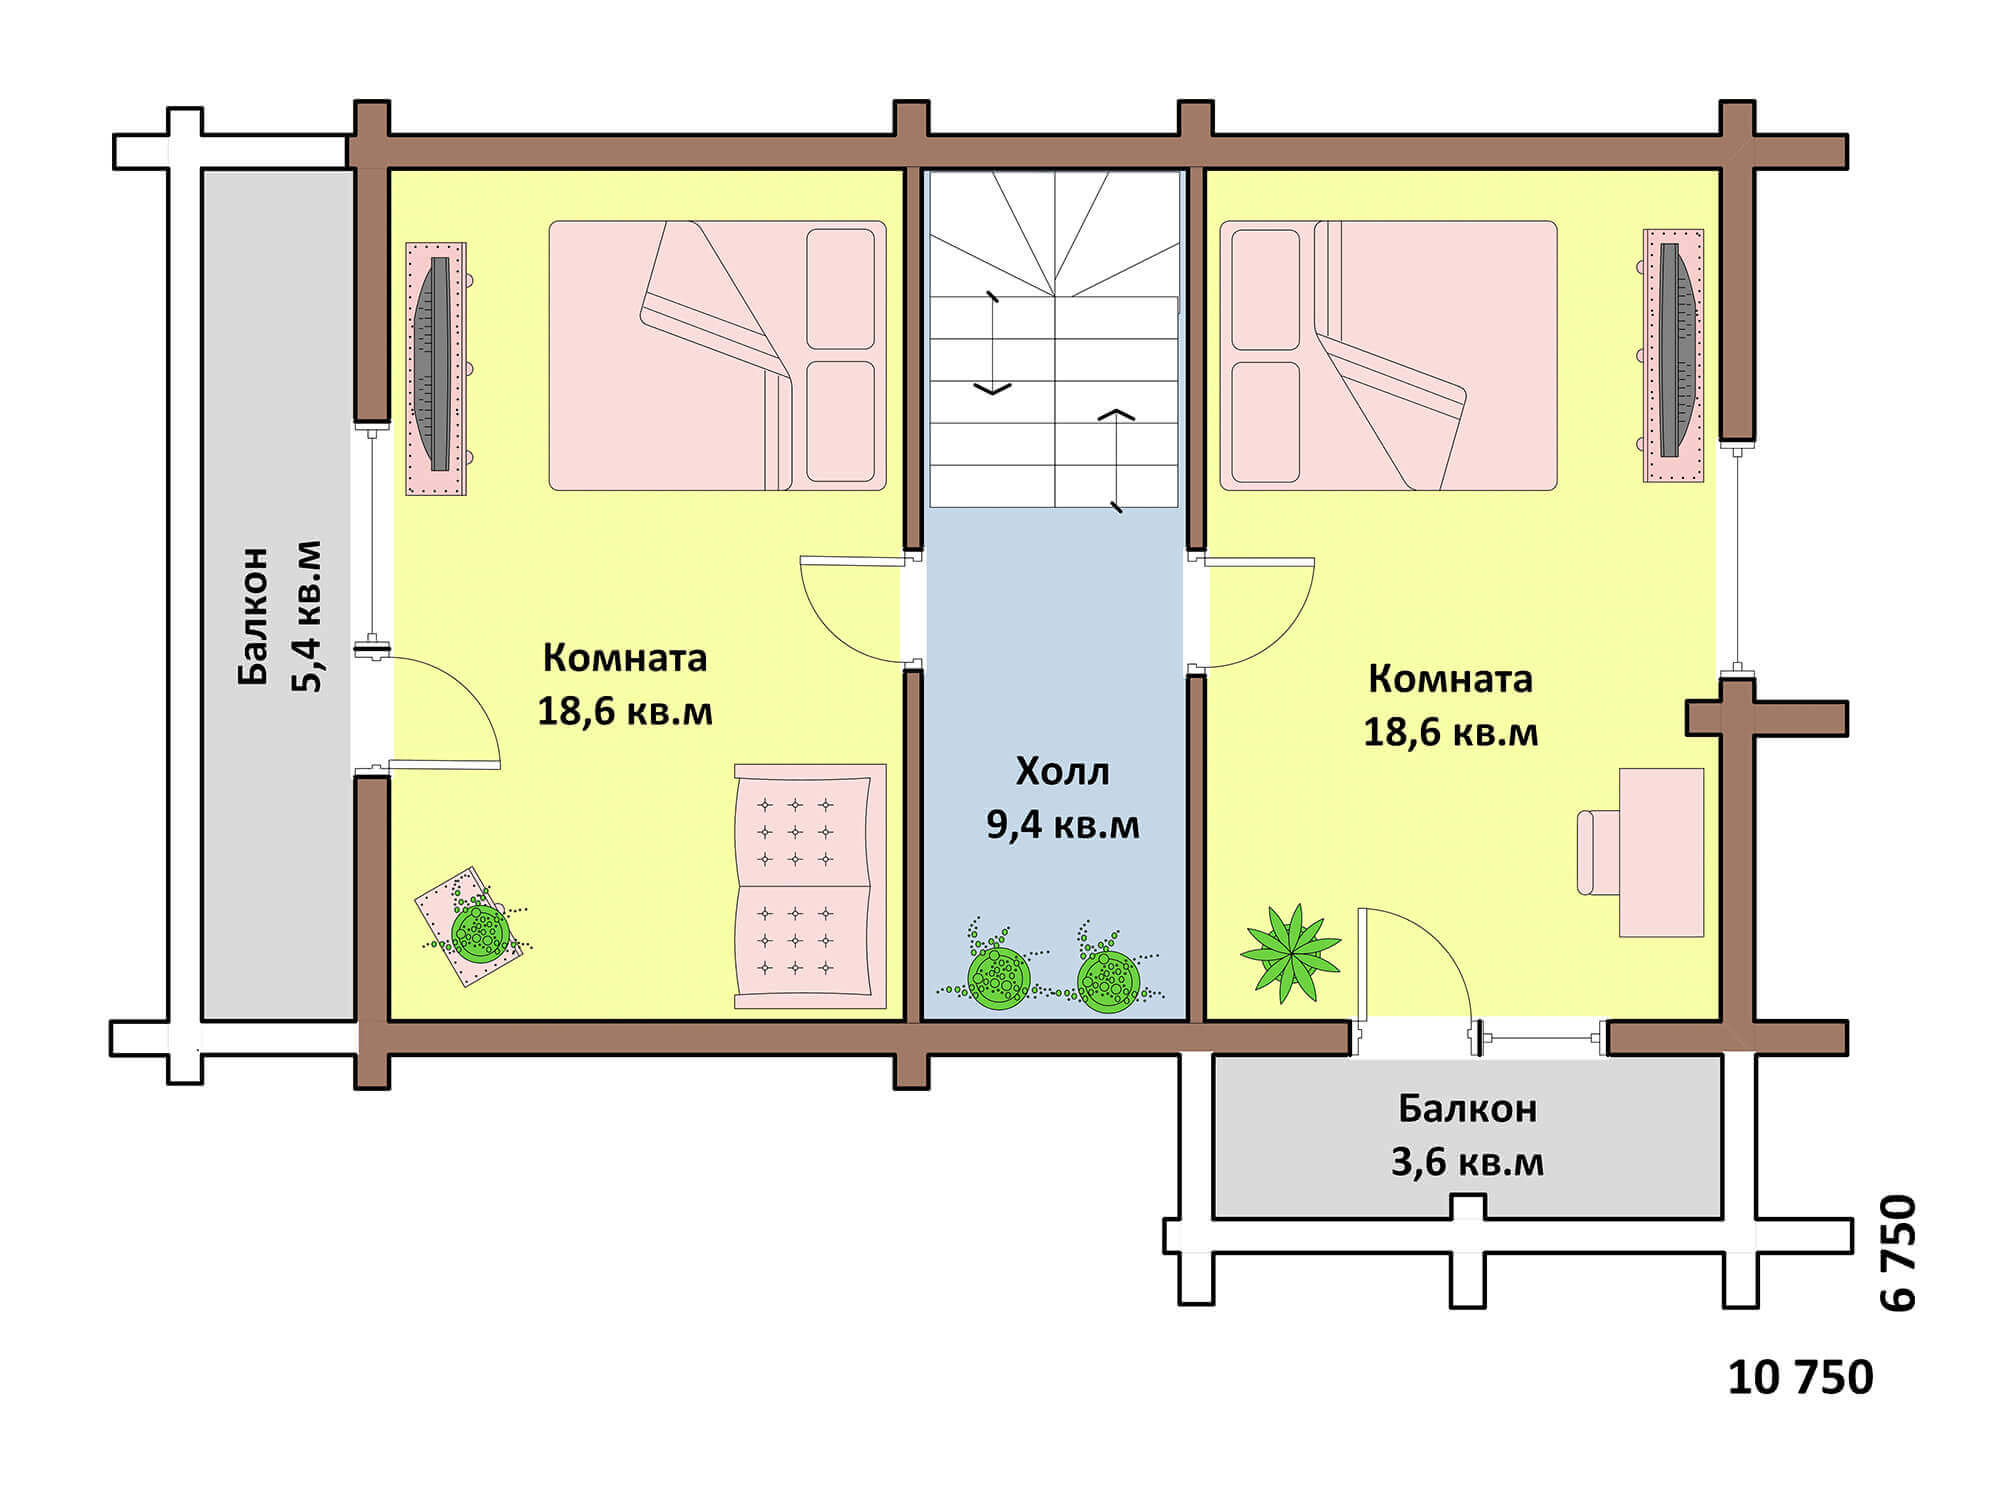 Проекты домов до 150 м² - Одноэтажные, двухэтажные планировки с мансардами